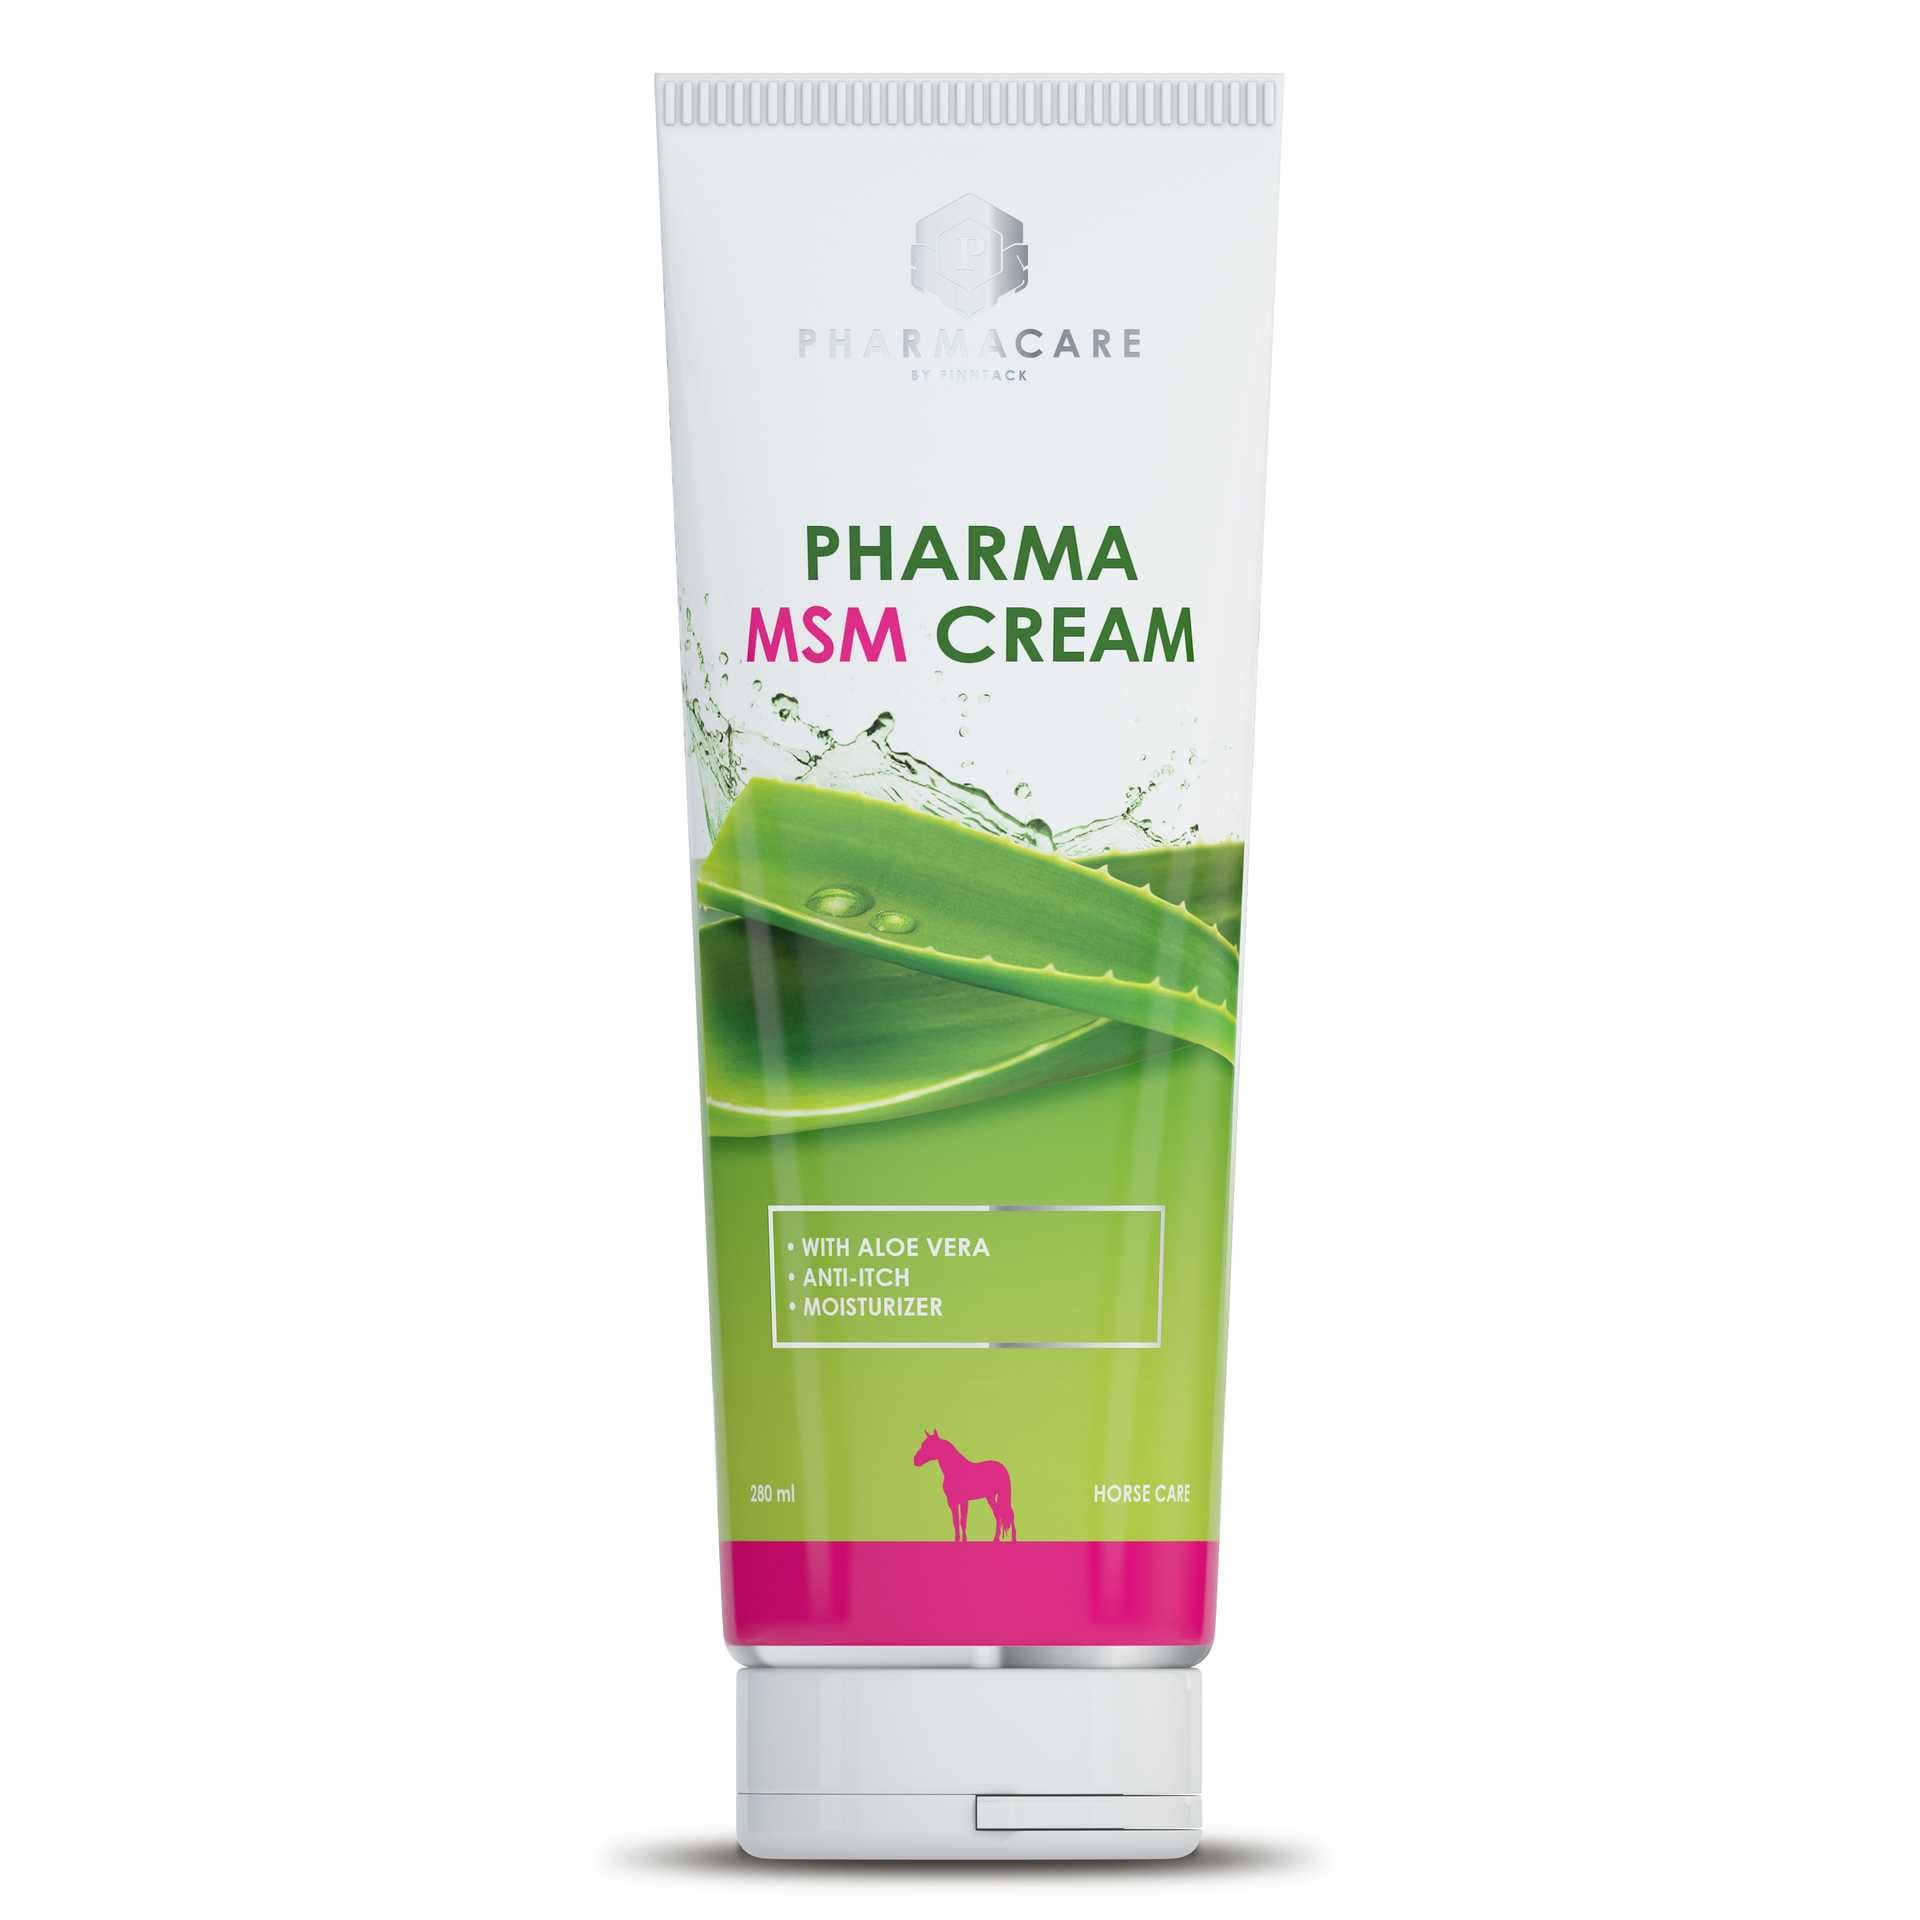 Pharma MSM Cream, 280ml